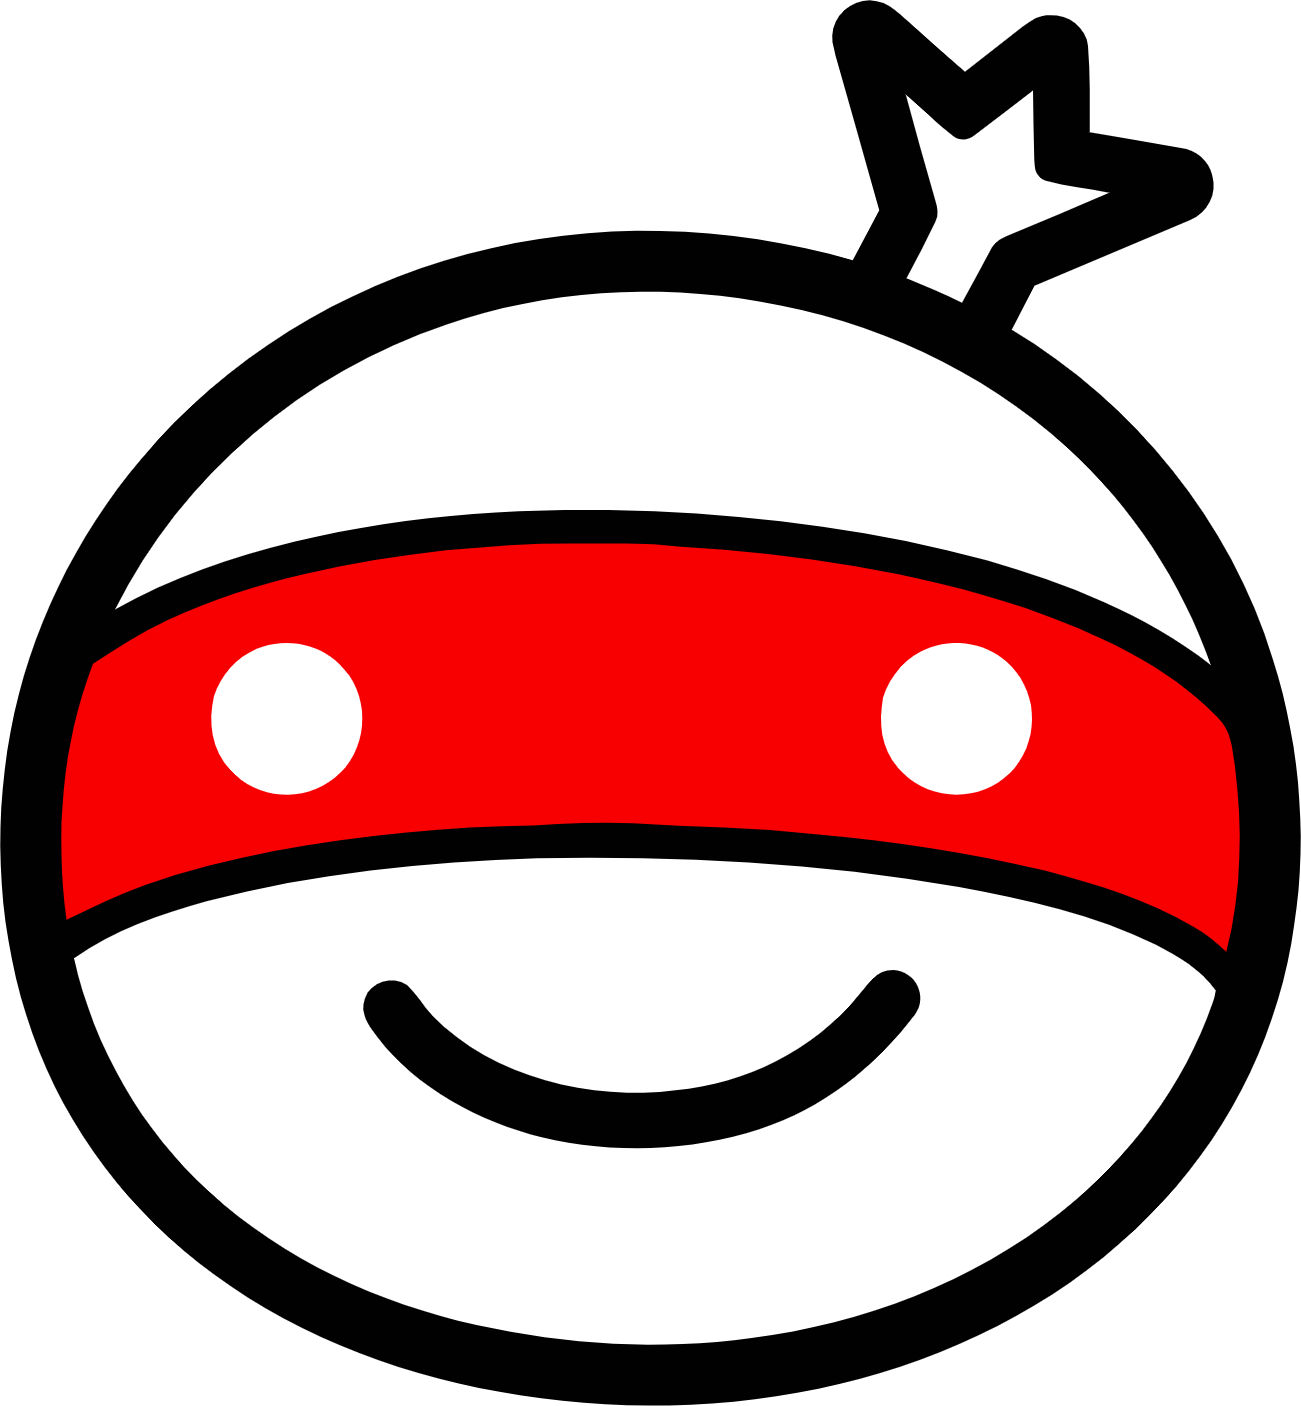 Monotaro logo (transparent PNG)